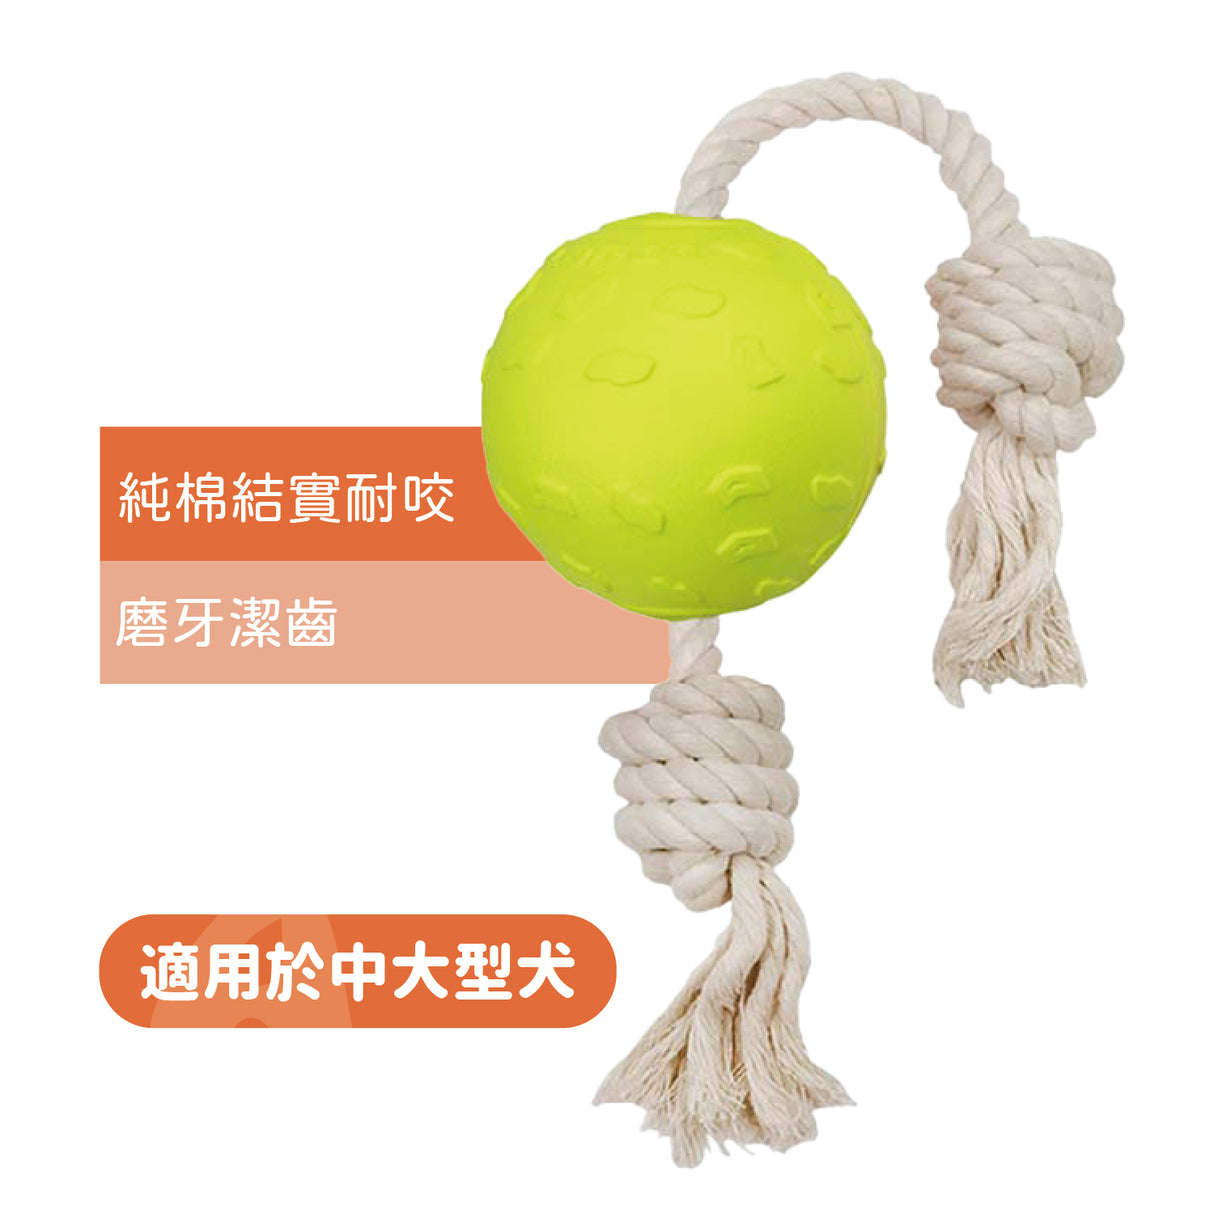 LaRoo萊諾 互動繩球 狗玩具 純棉互動玩具